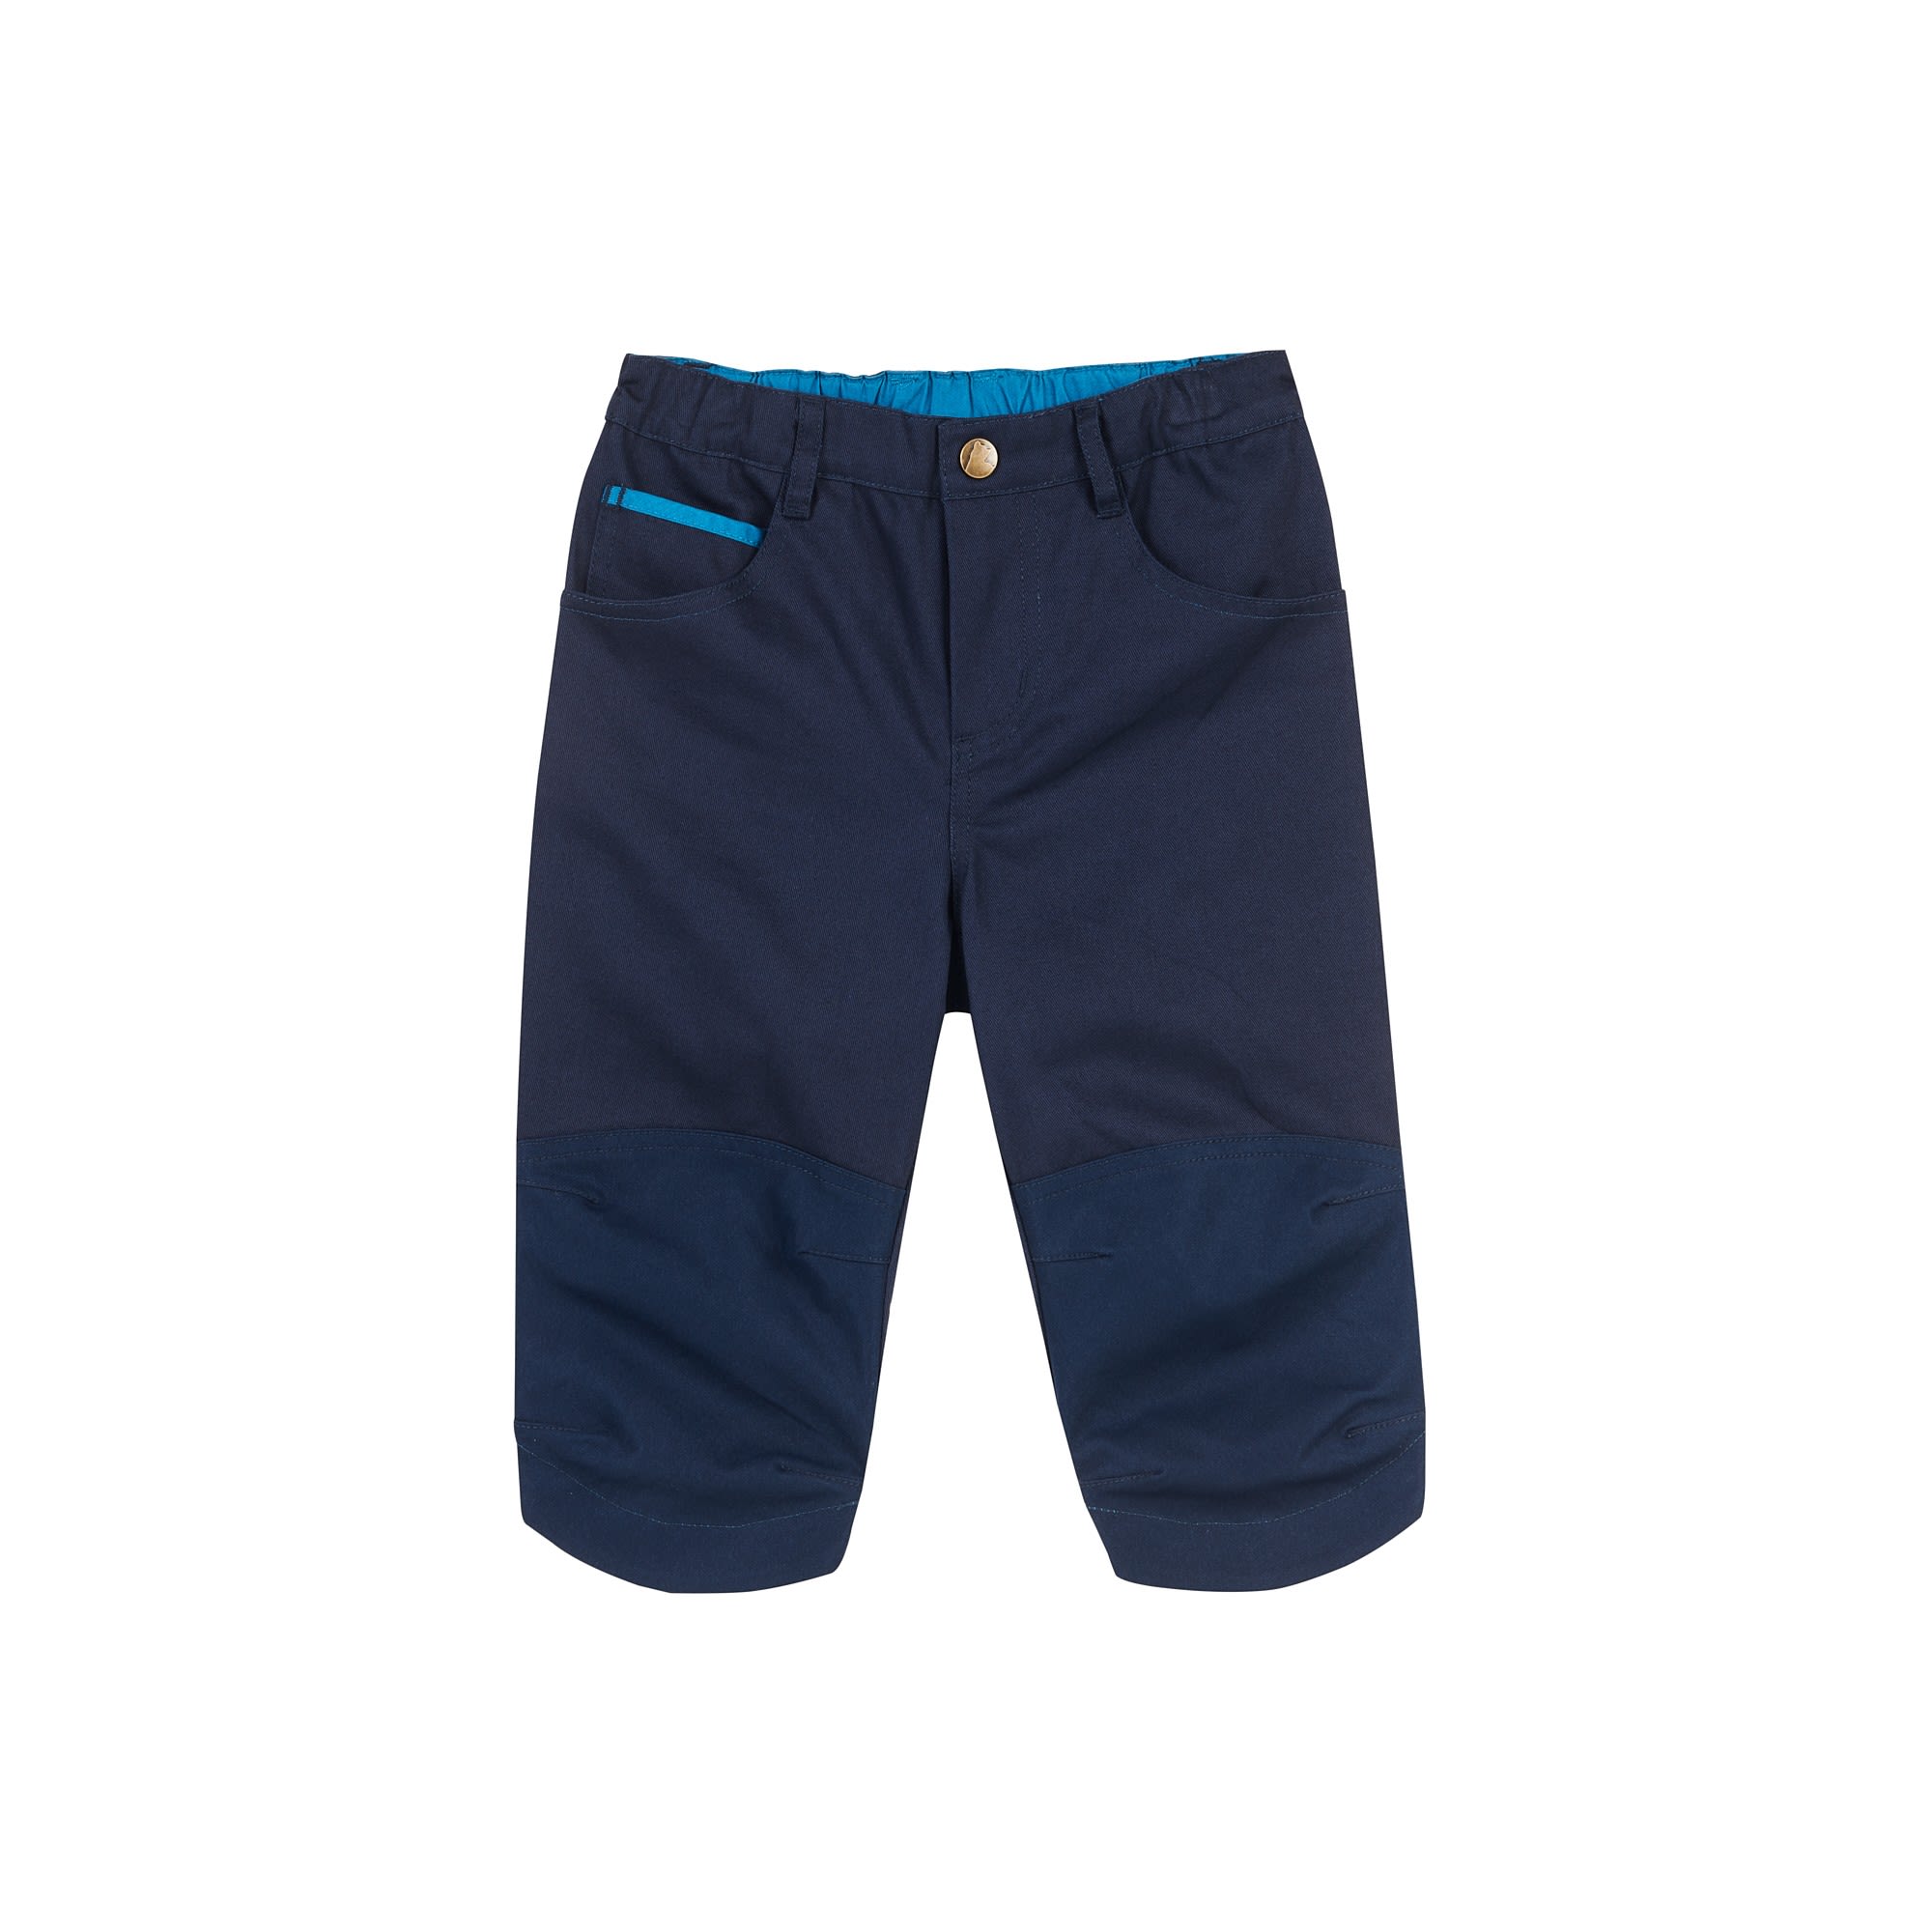 Finkid Kulta (Vorgngermodell) Blau- Shorts- Grsse 90 - 100 - Farbe Navy unter Finkid